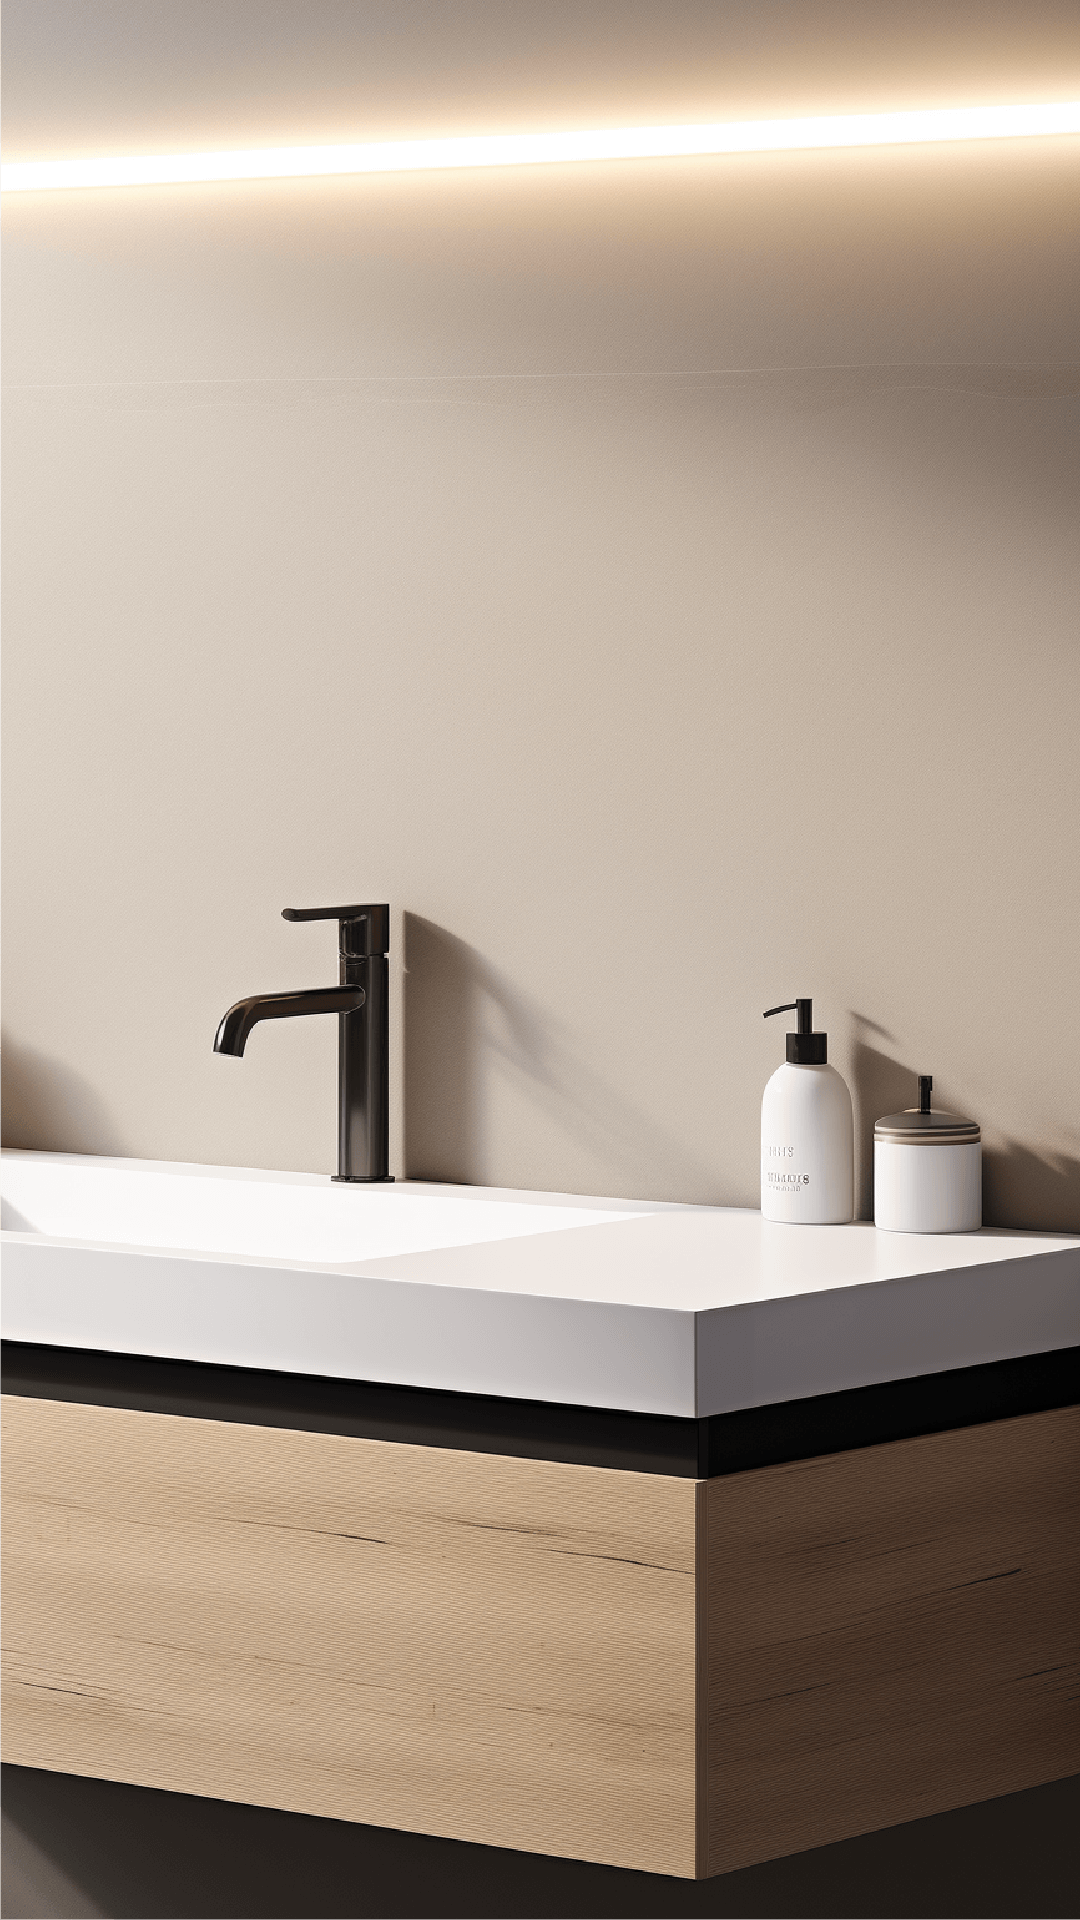 Un mueble de baño minimalista de alta calidad, que combina diseño elegante con funcionalidad superior, ofreciendo un espacio de almacenamiento organizado y un estilo atemporal para realzar cualquier ambiente de baño con un toque de sofisticación.